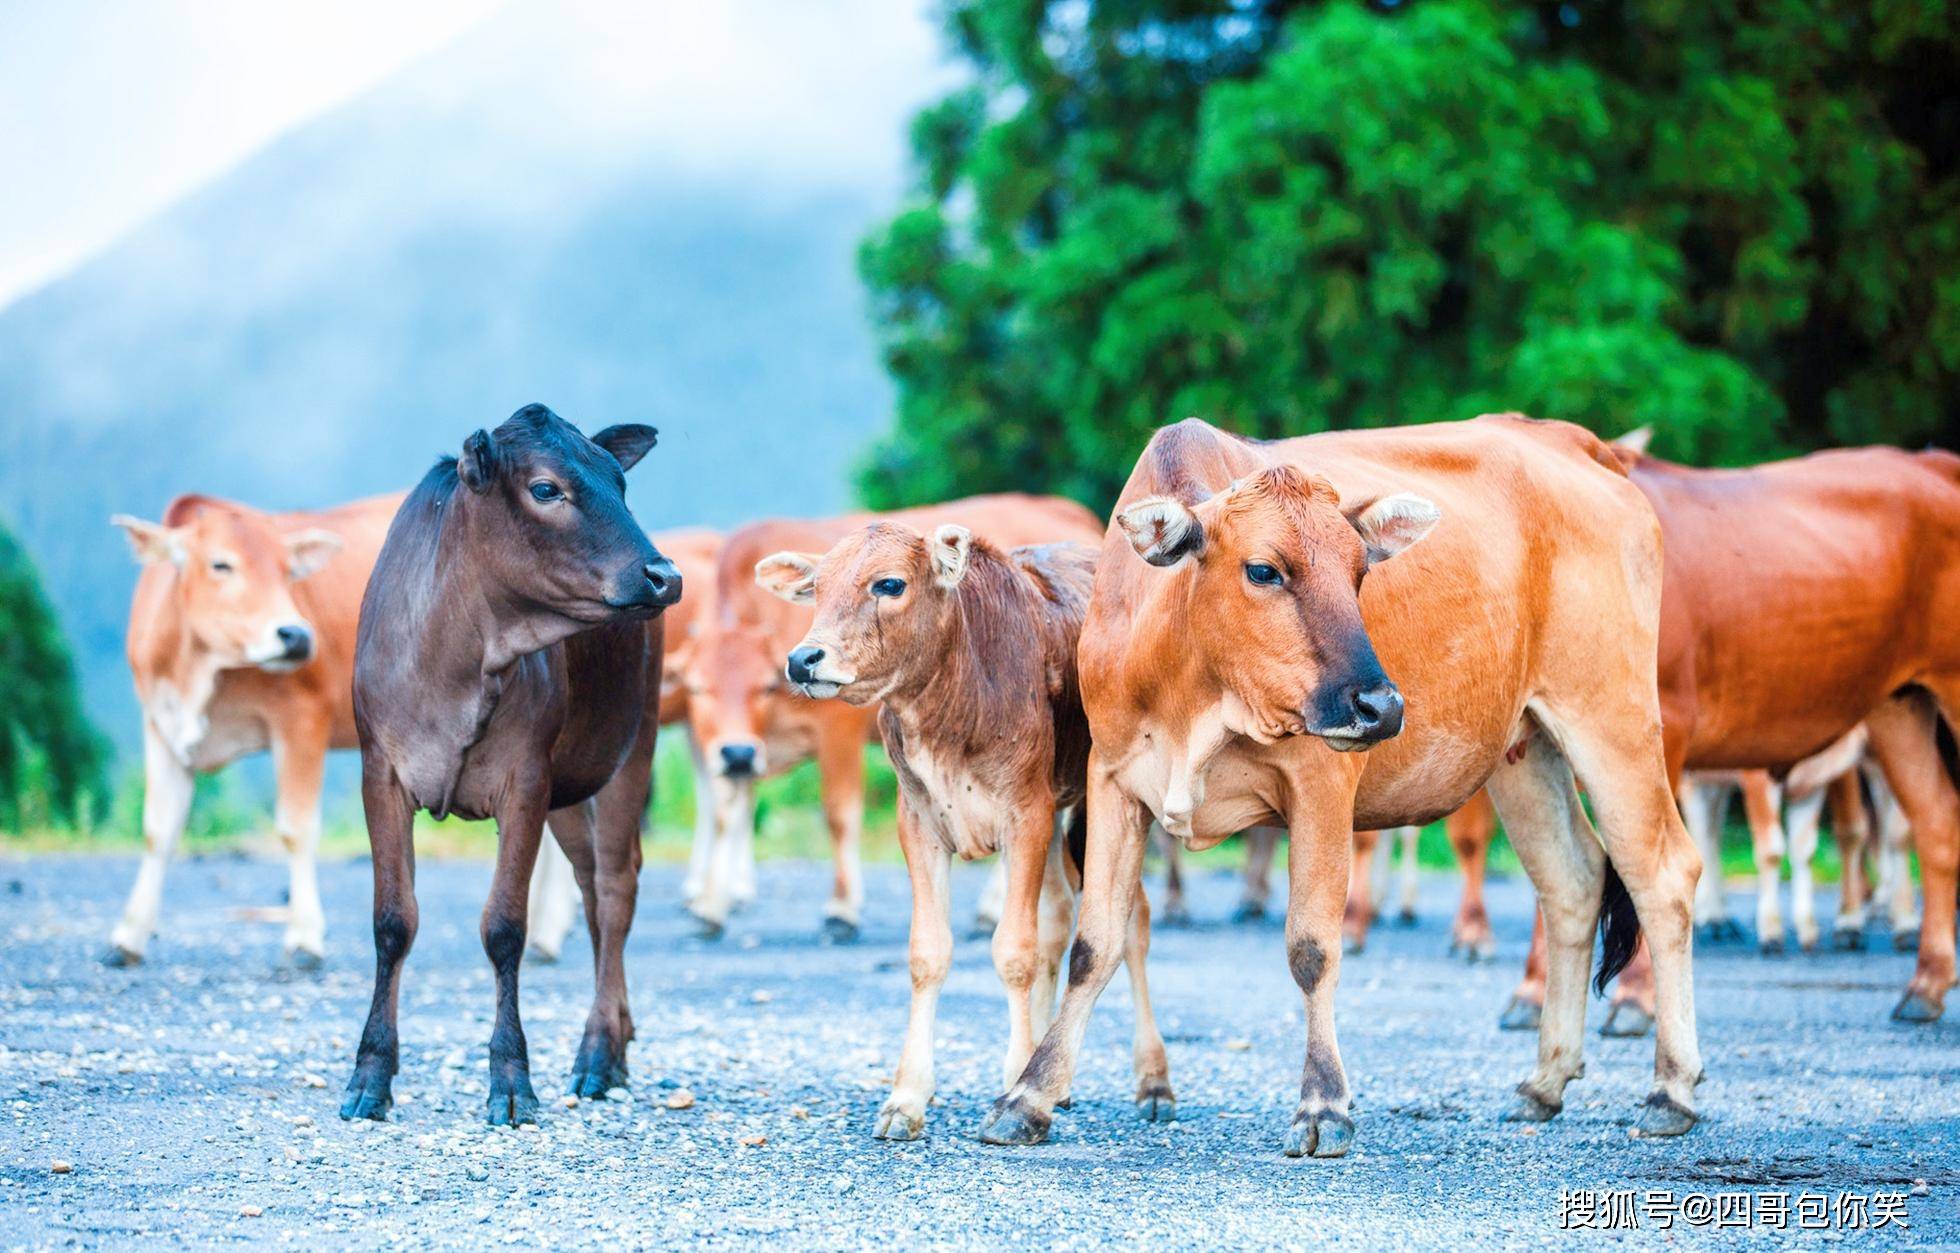 西沙东岛,有很多来历不明的野牛群,专家分析牛粪找到答案